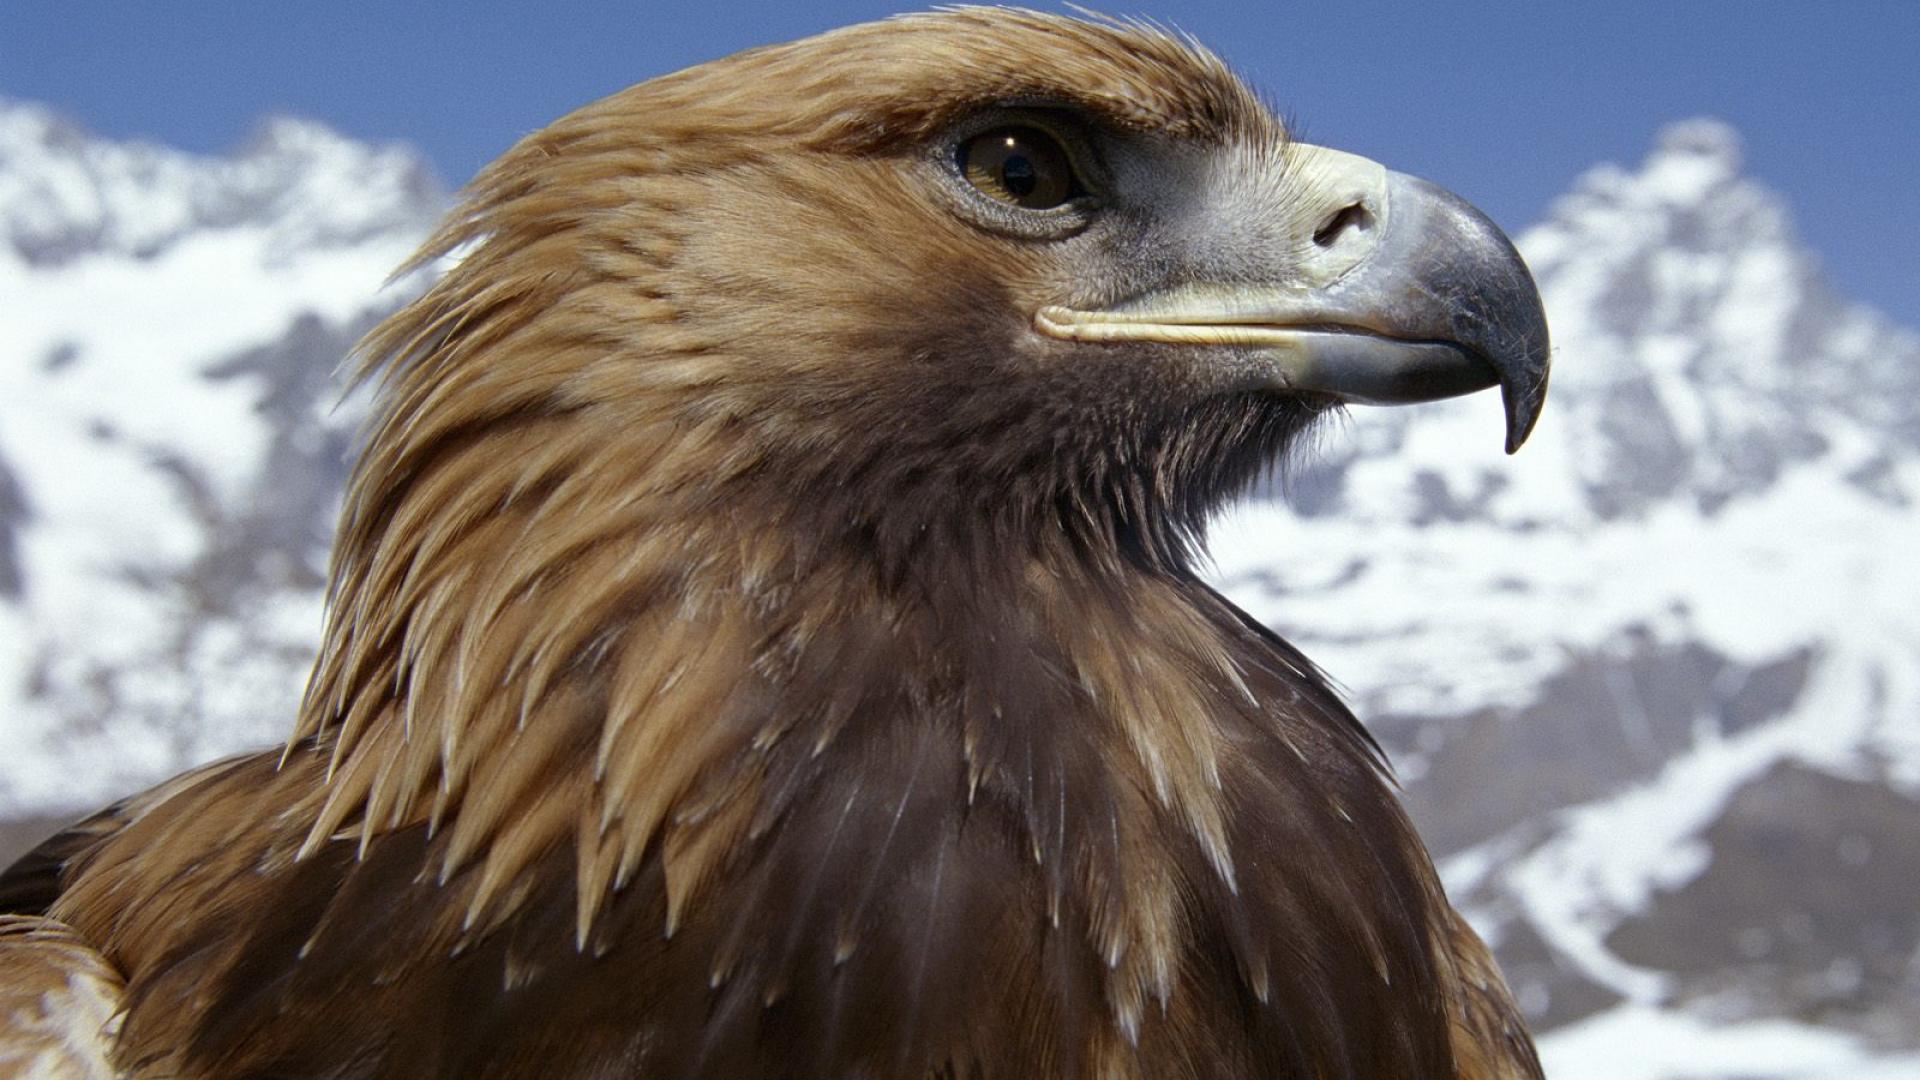 mobile desktop background golden eagle pictures free